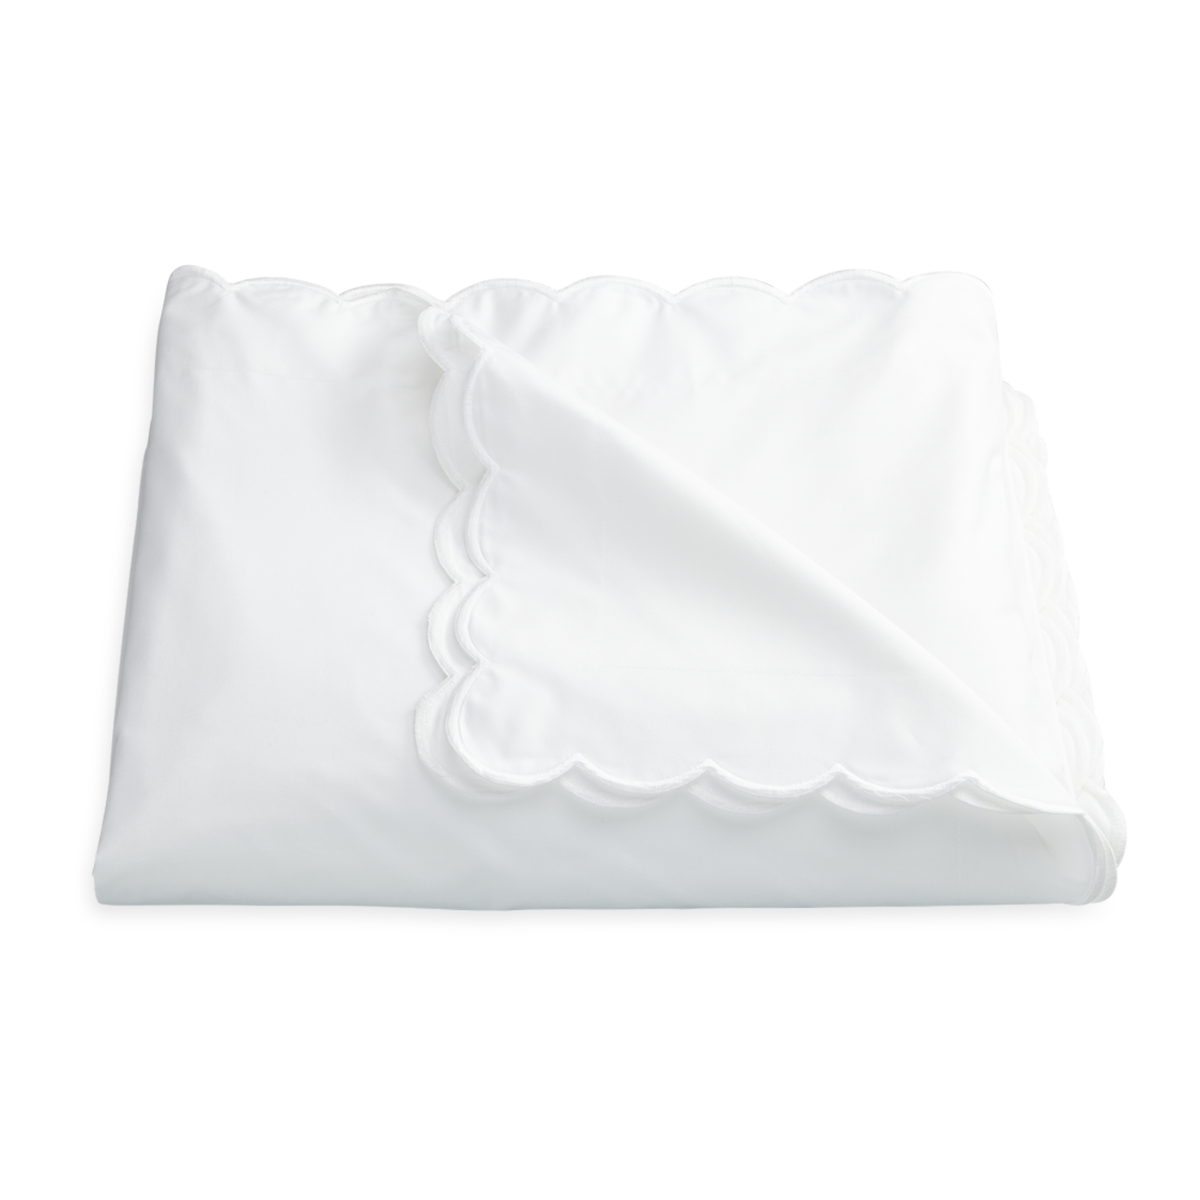 Duvet Cover of Matouk Dakota Bedding in White Color